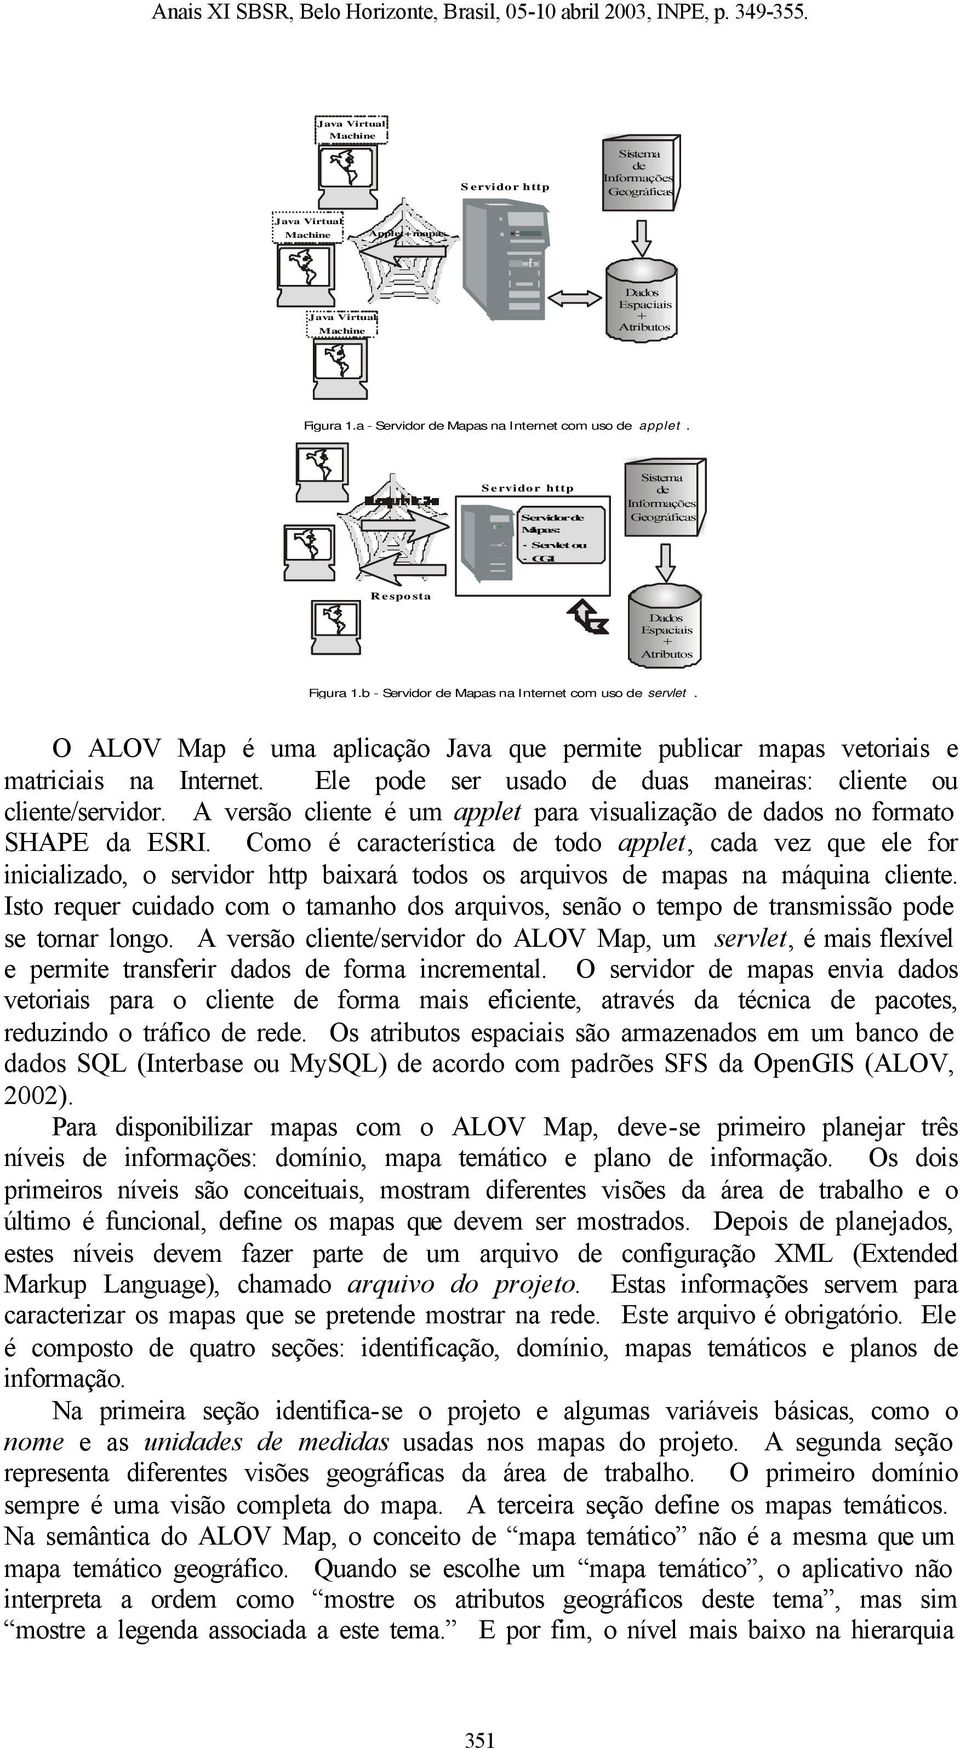 b - Servidor de Mapas na Internet com uso de servlet. O ALOV Map é uma aplicação Java que permite publicar mapas vetoriais e matriciais na Internet.